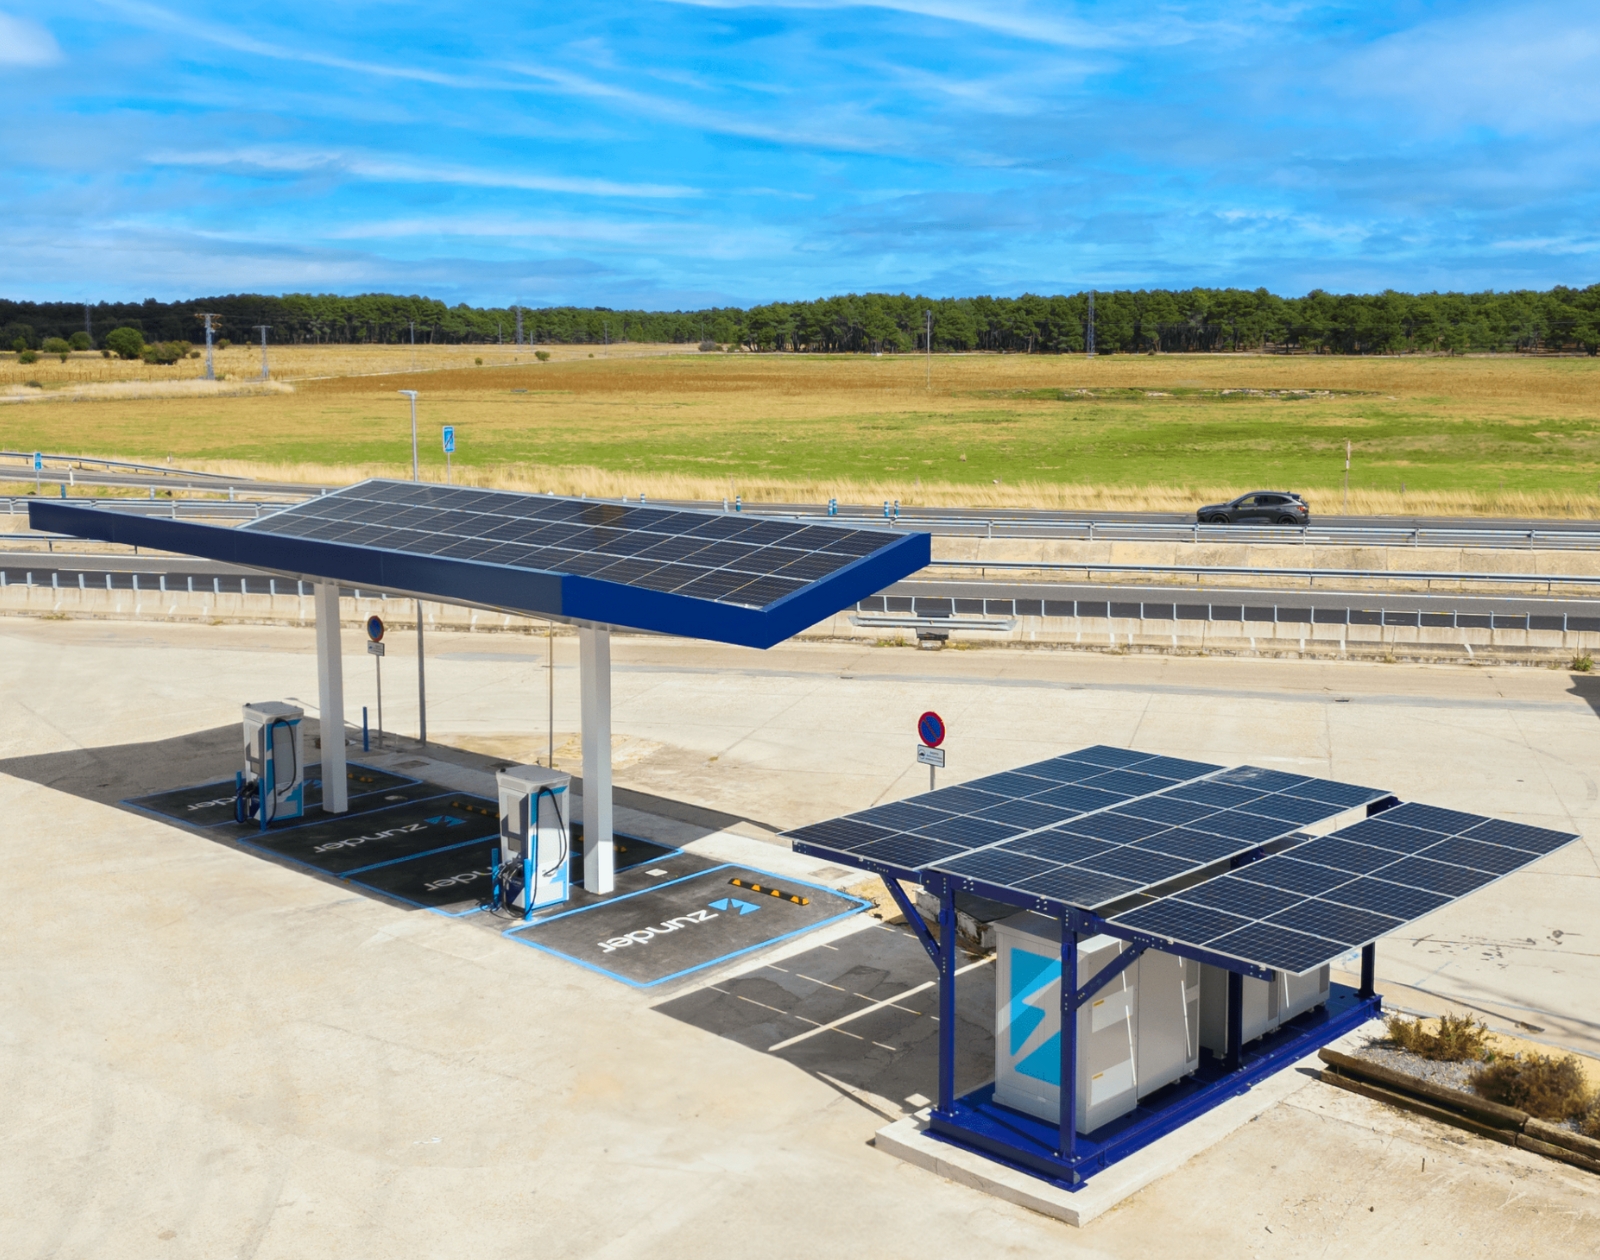 ¿Esta estación de carga ultrapotente para coches eléctricos es realmente independiente desde el punto de vista energético?